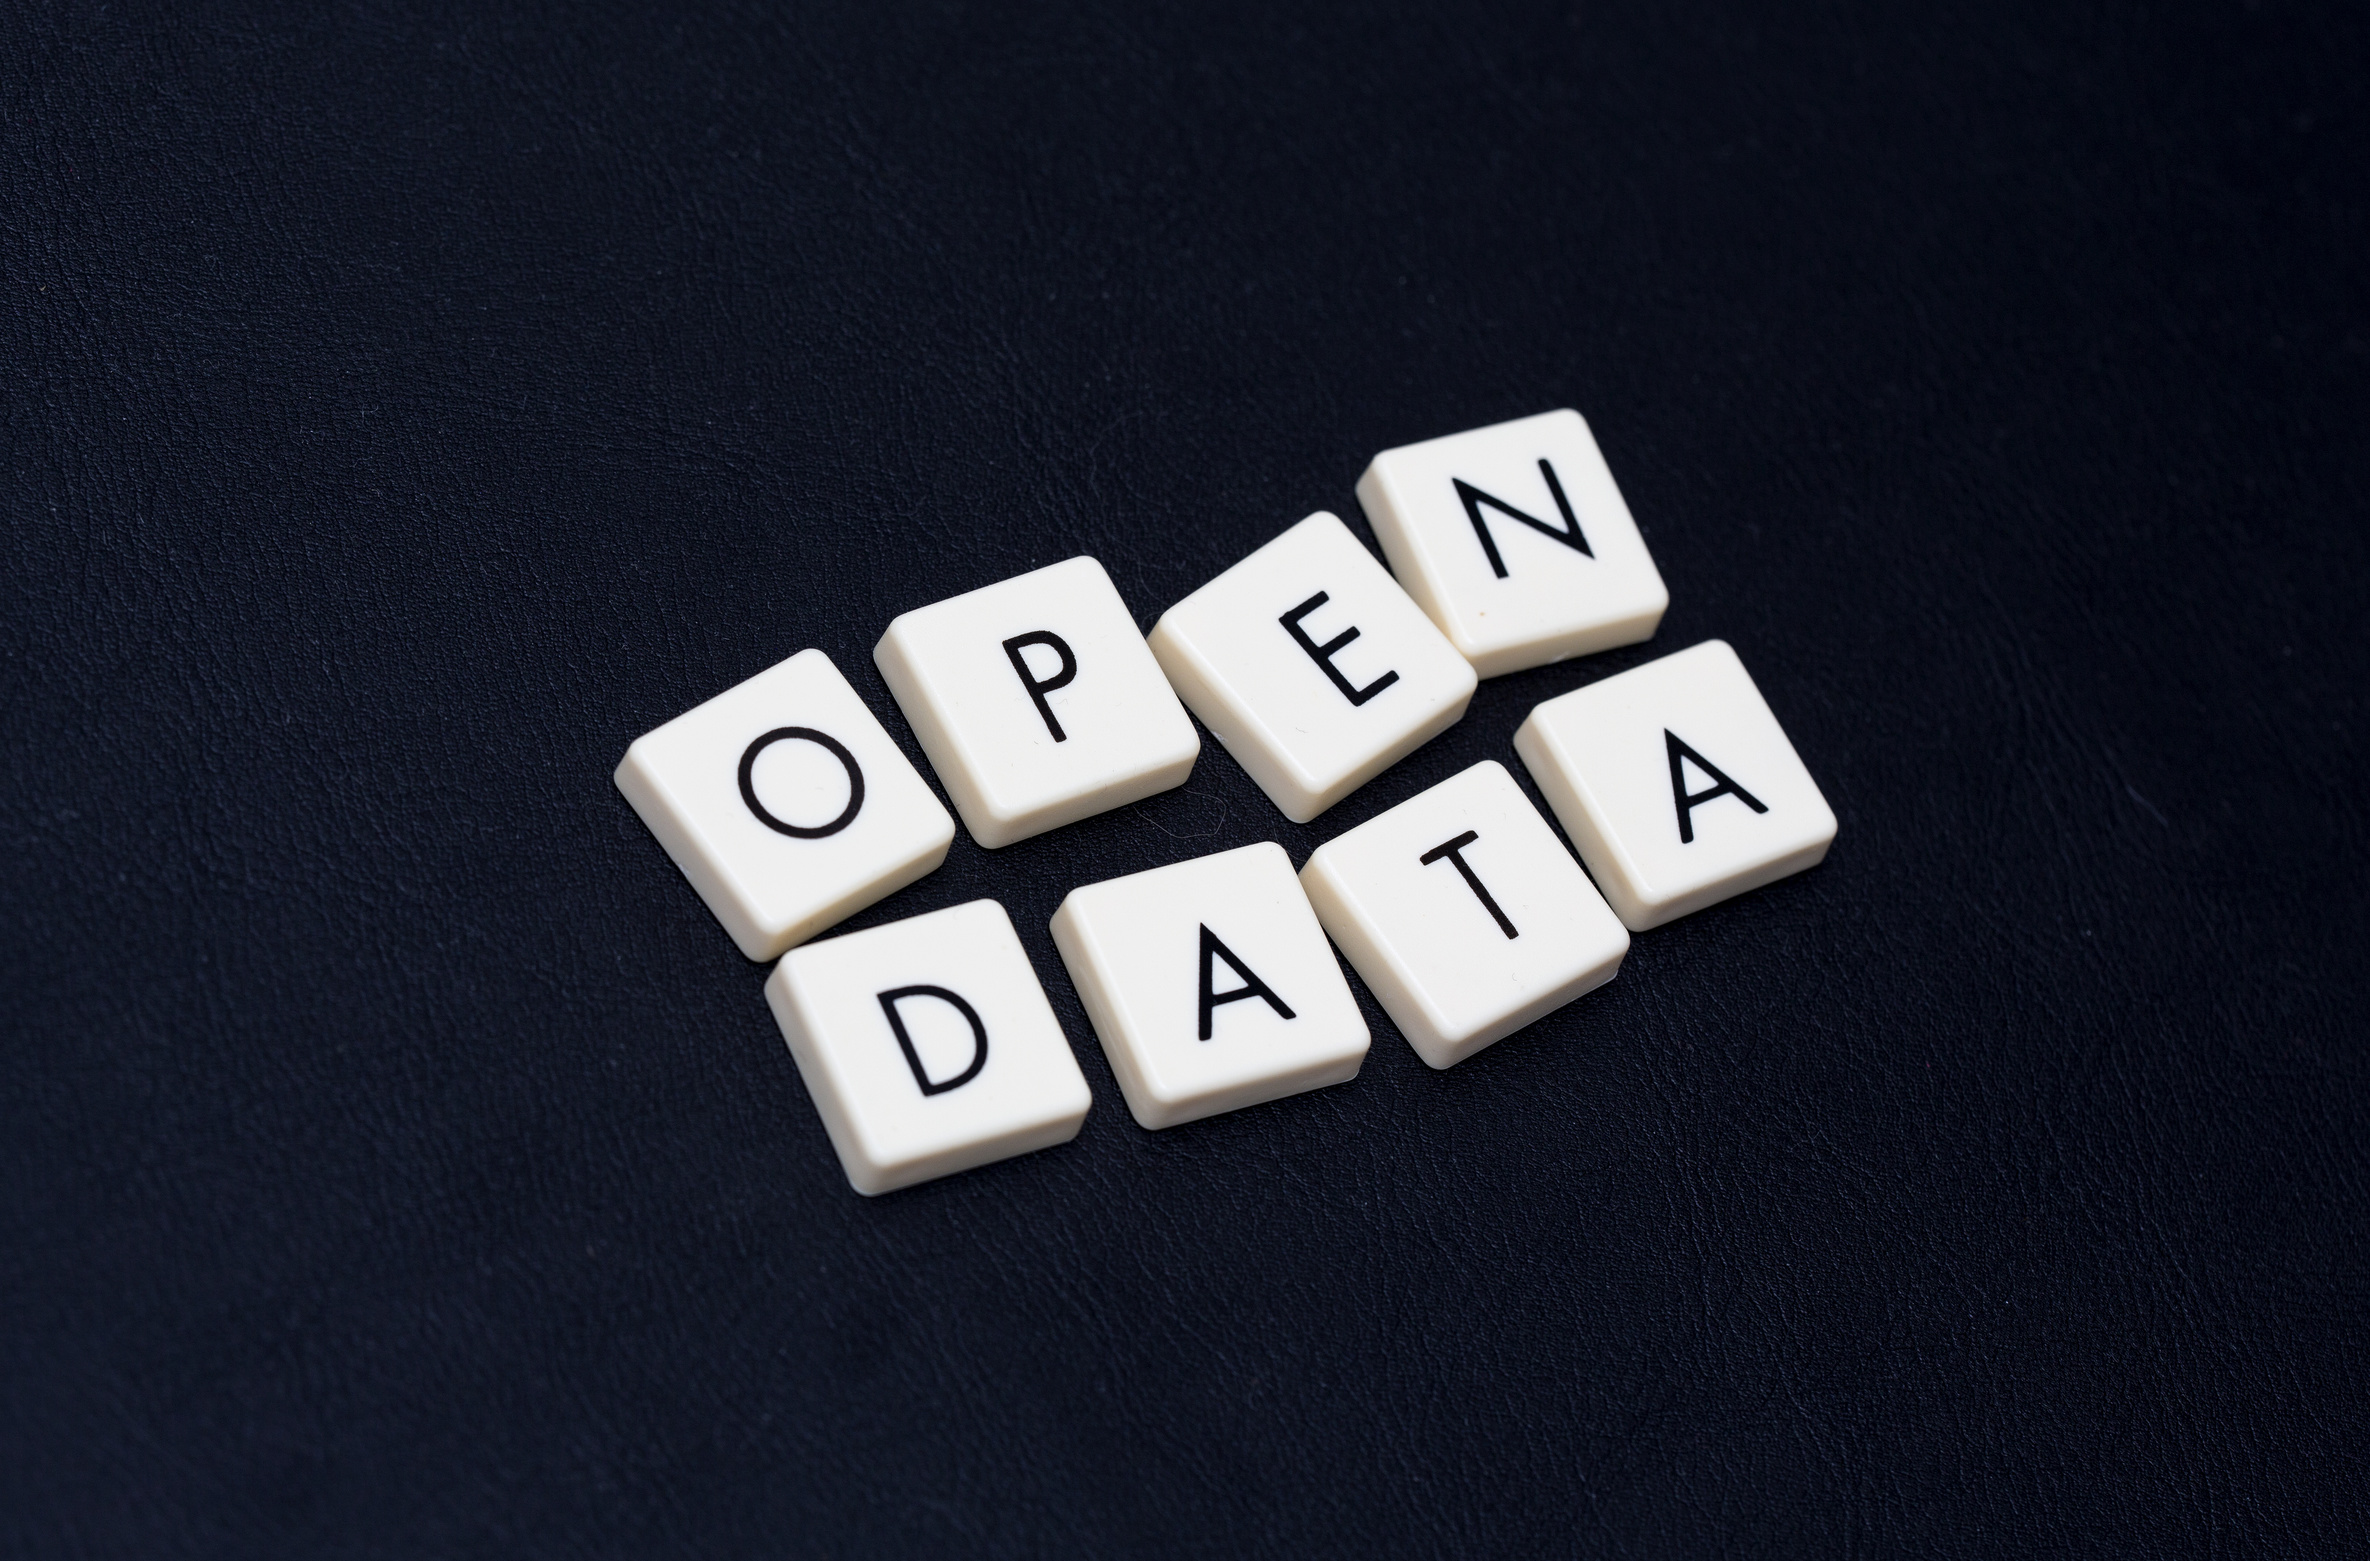 Buchstabenplättchen bilden die Worte: Open Data